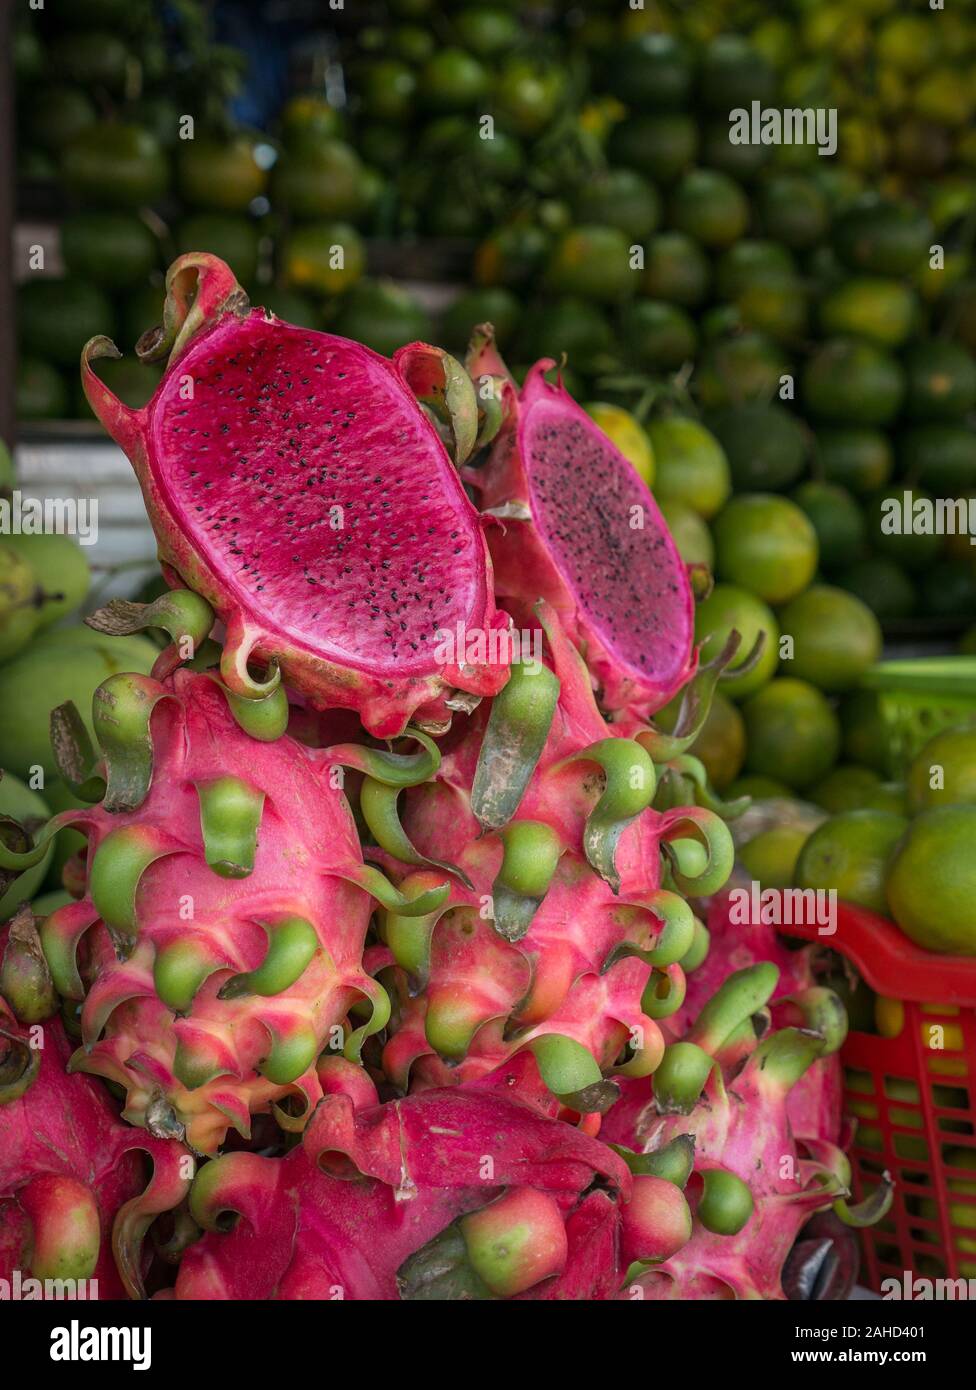 Fresco e ben disposti drago rosa frutti (intero e tagliato) con vari mango in background in vietnamita mercato di frutta, telaio verticale Foto Stock